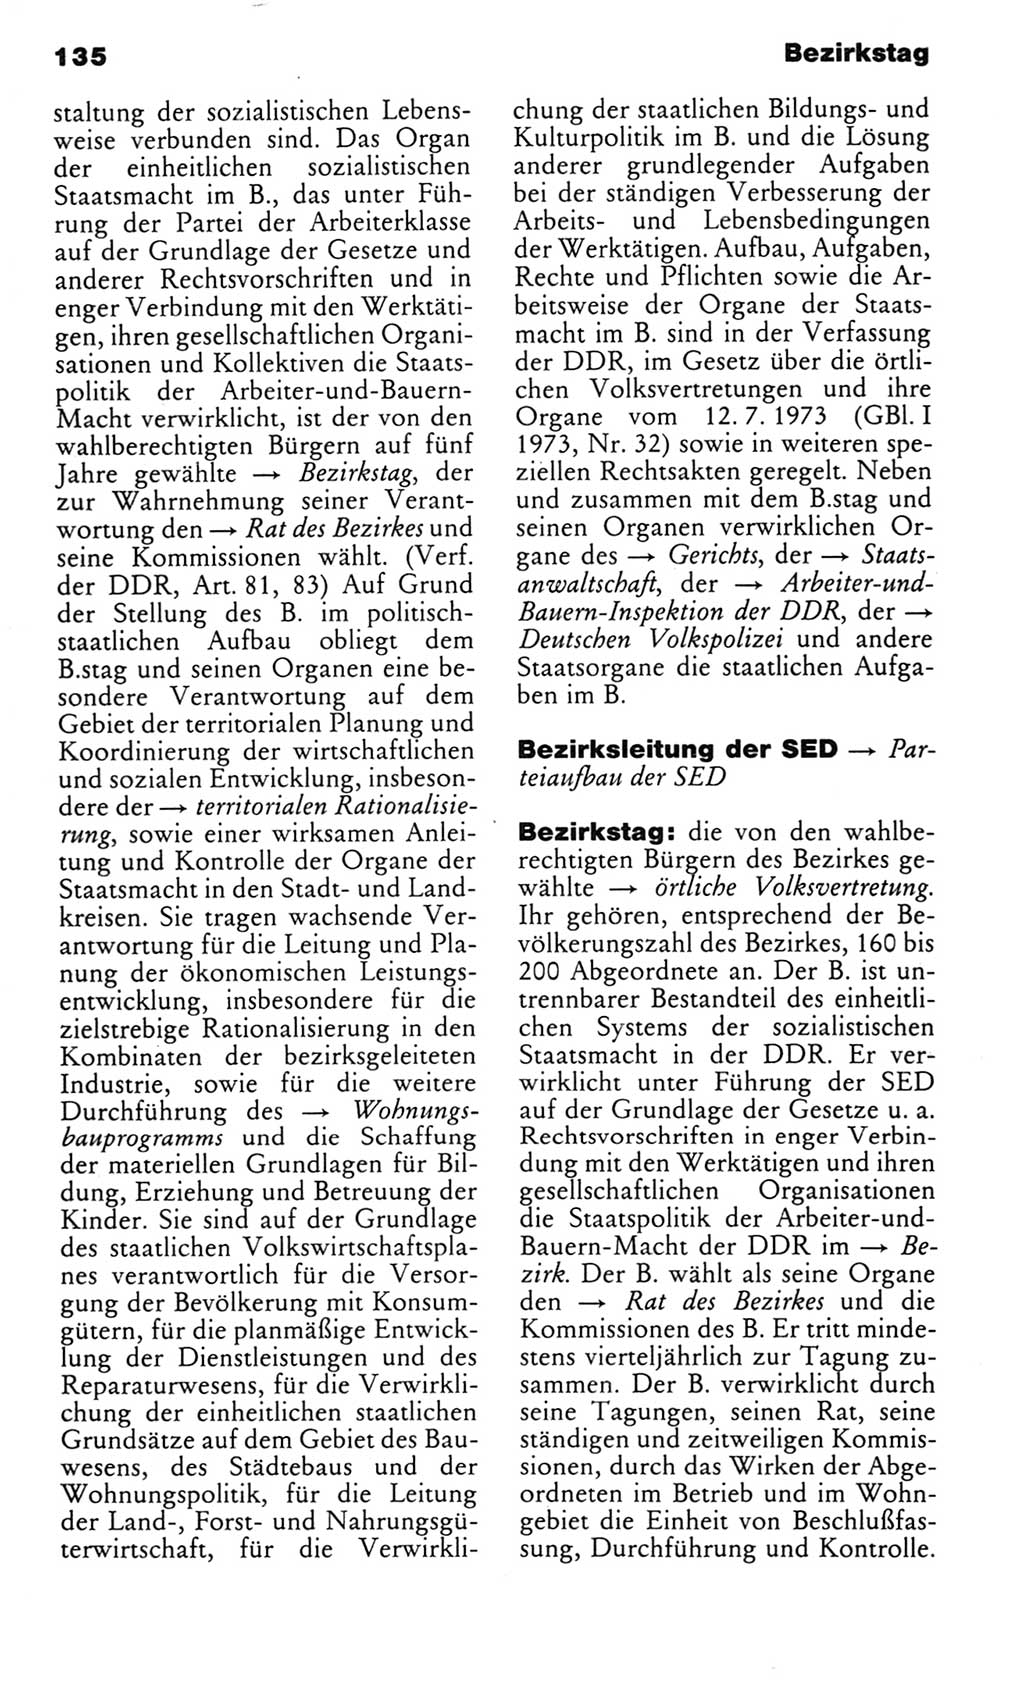 Kleines politisches Wörterbuch [Deutsche Demokratische Republik (DDR)] 1985, Seite 135 (Kl. pol. Wb. DDR 1985, S. 135)